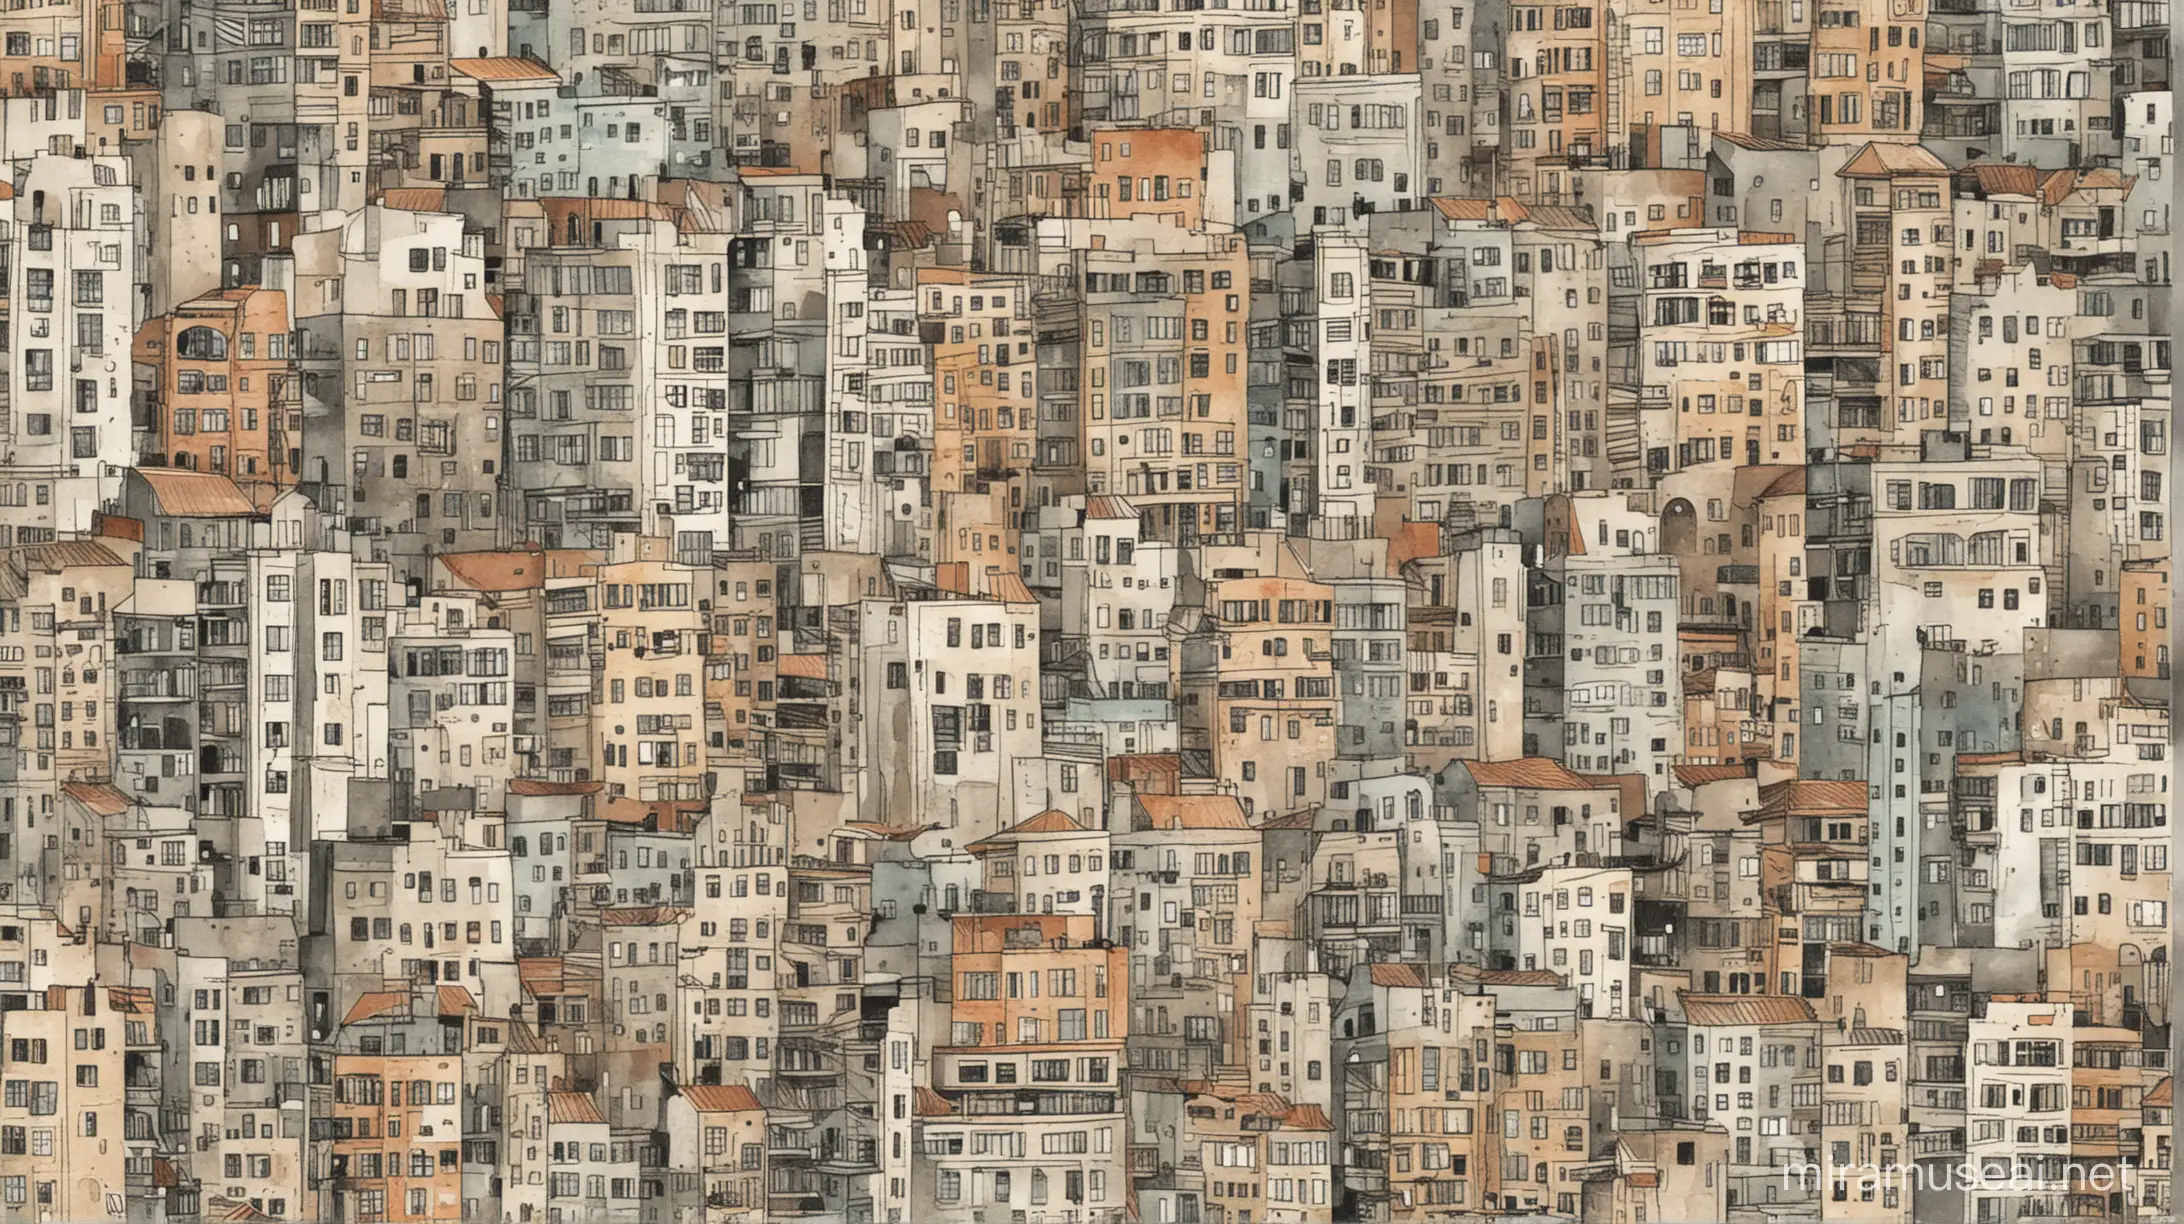 wzór zainspirowany spontanicznymi rysunkami architektonicznymi. Panorama miasta. grafika nawiązuje do tematyki industrialnej. grafika wykorzystuje techniki malarstwa takie jak szkic, akwarela.